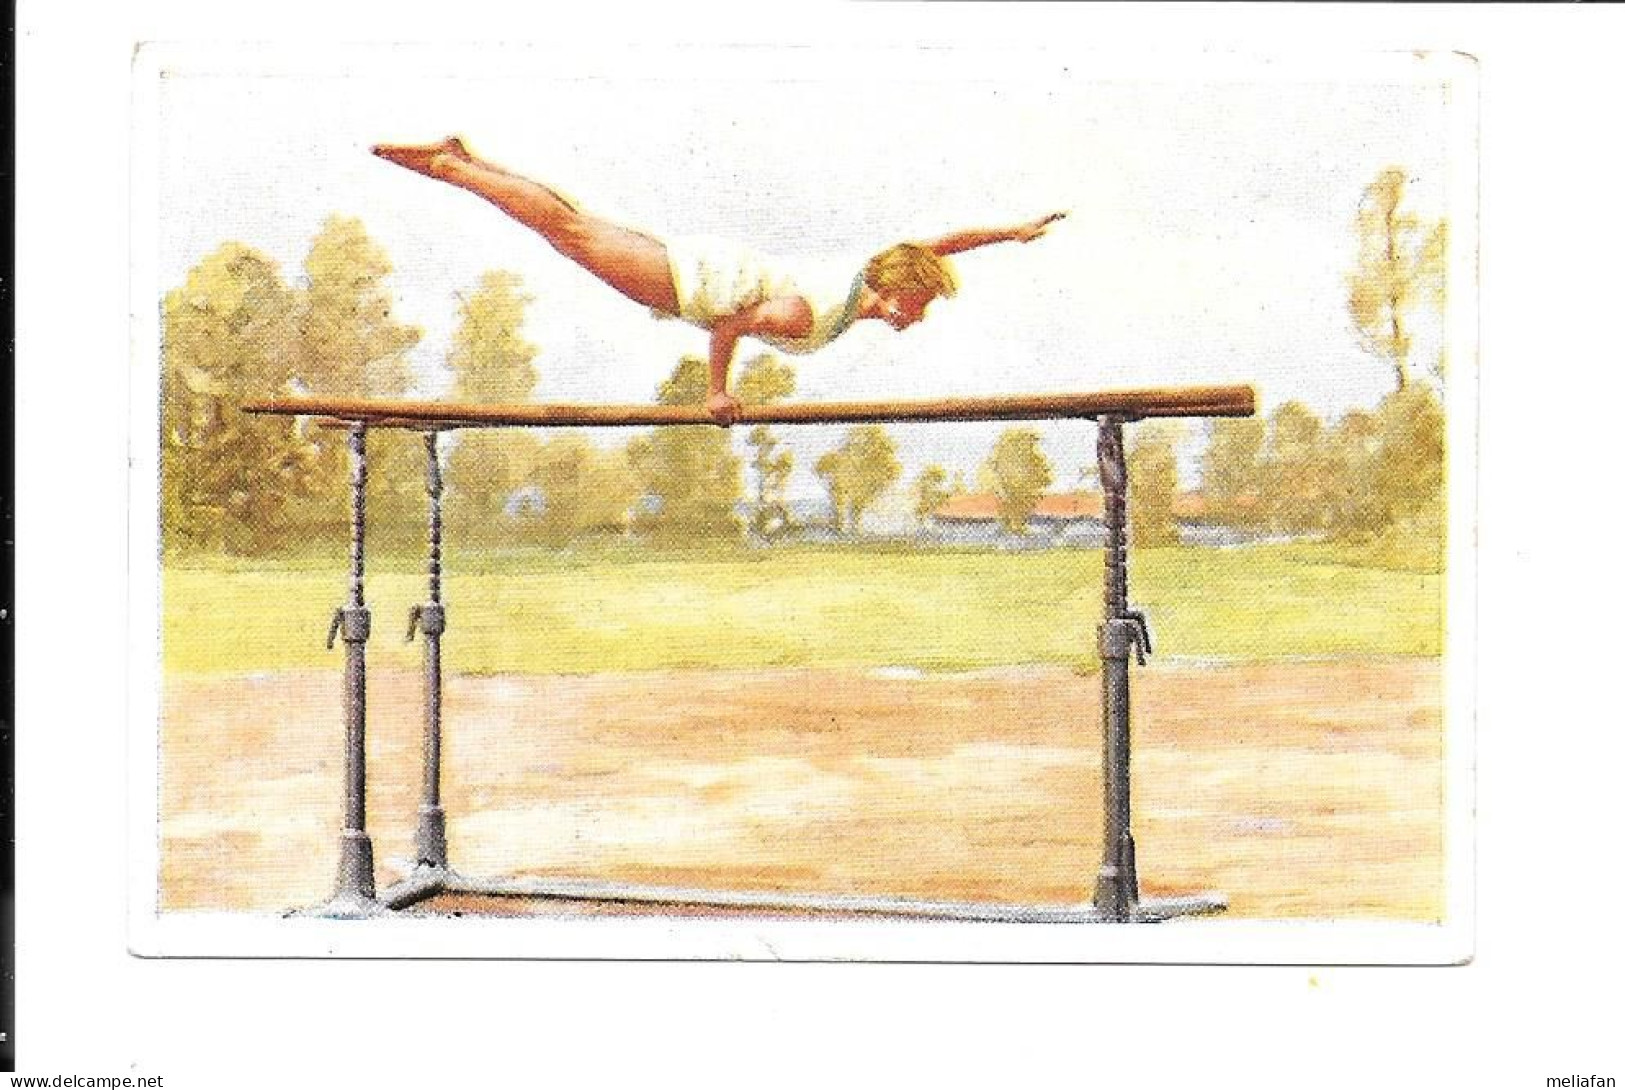 CK27 - IMAGE CIGARETTES SANELLA - GYMNASTIQUE - BARRES PARALLELES - Gymnastique